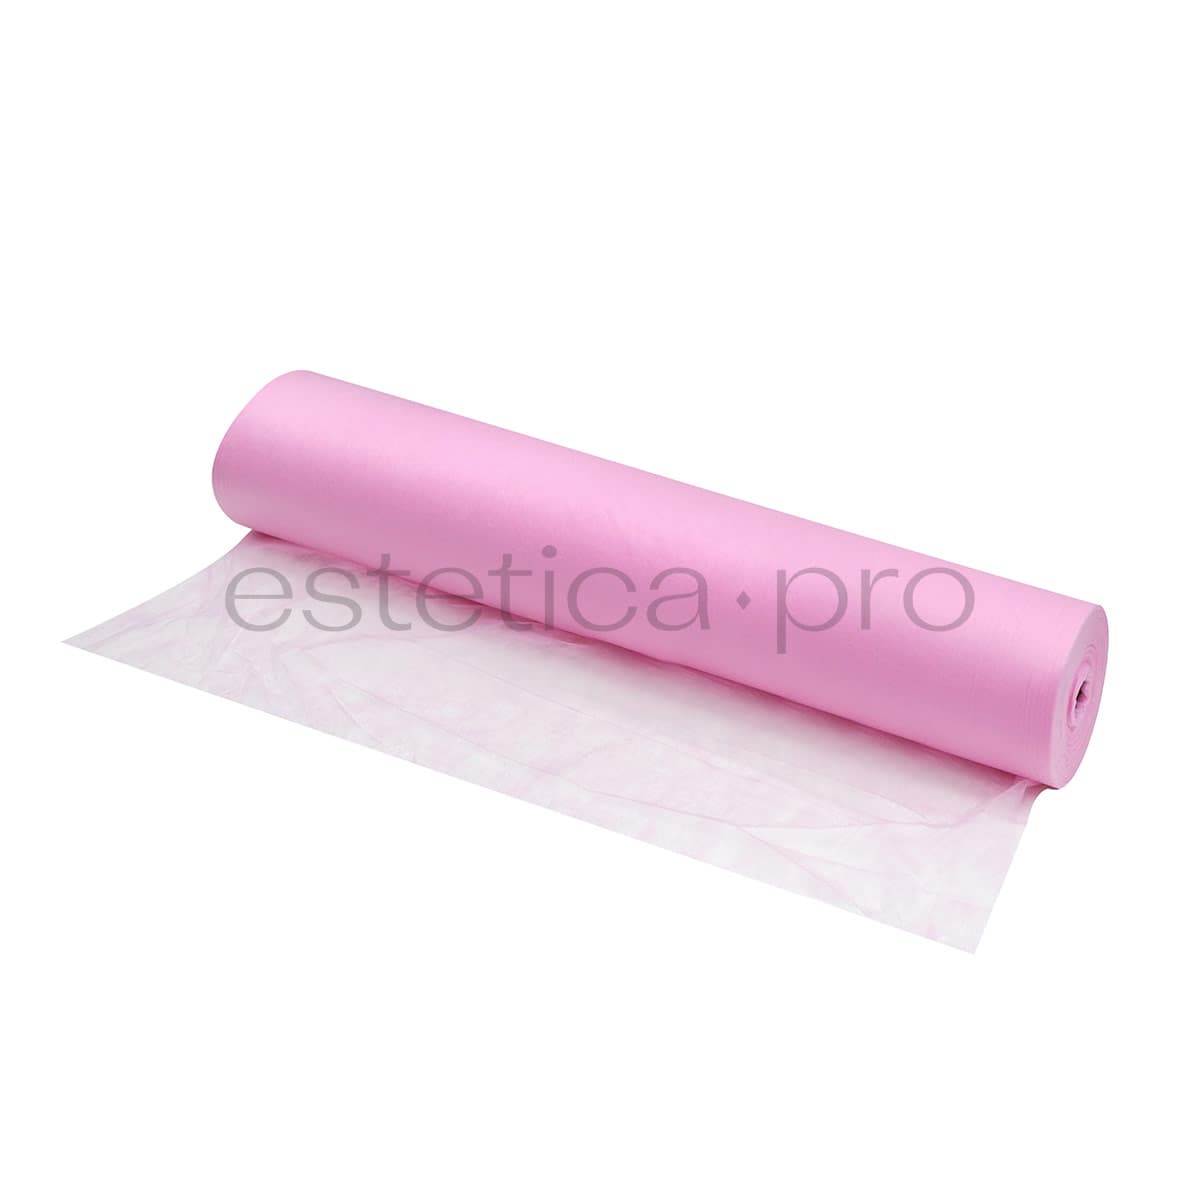 Простынь одноразовая 70*200,SMS 20 гр/м,100 шт (рулон), цвет розовый